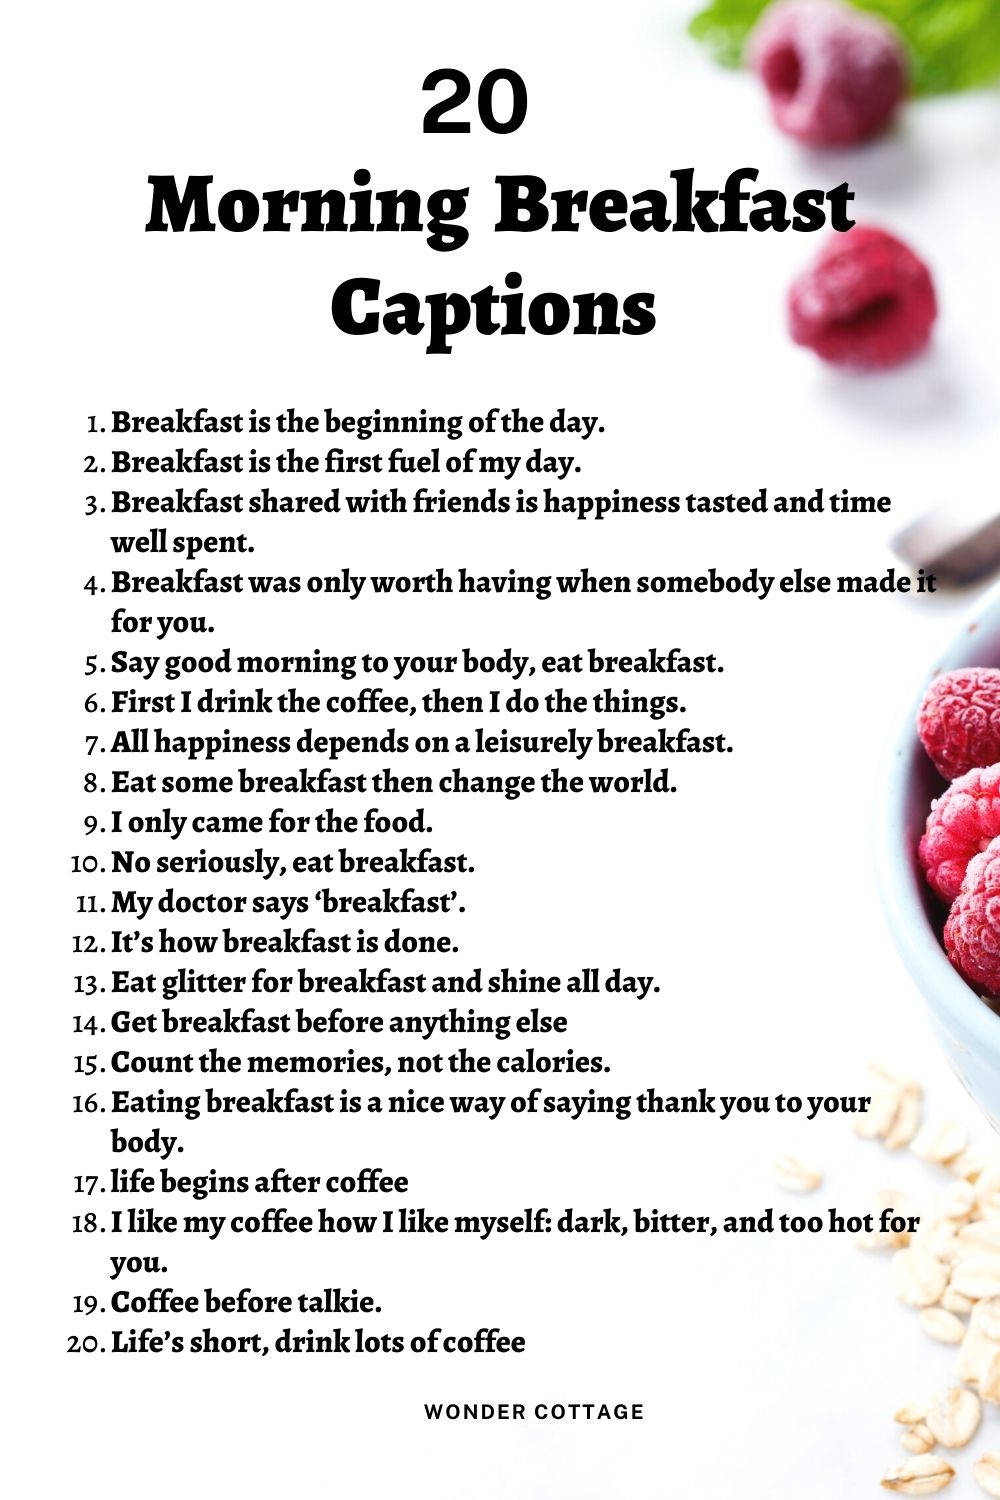 Morning breakfast captions